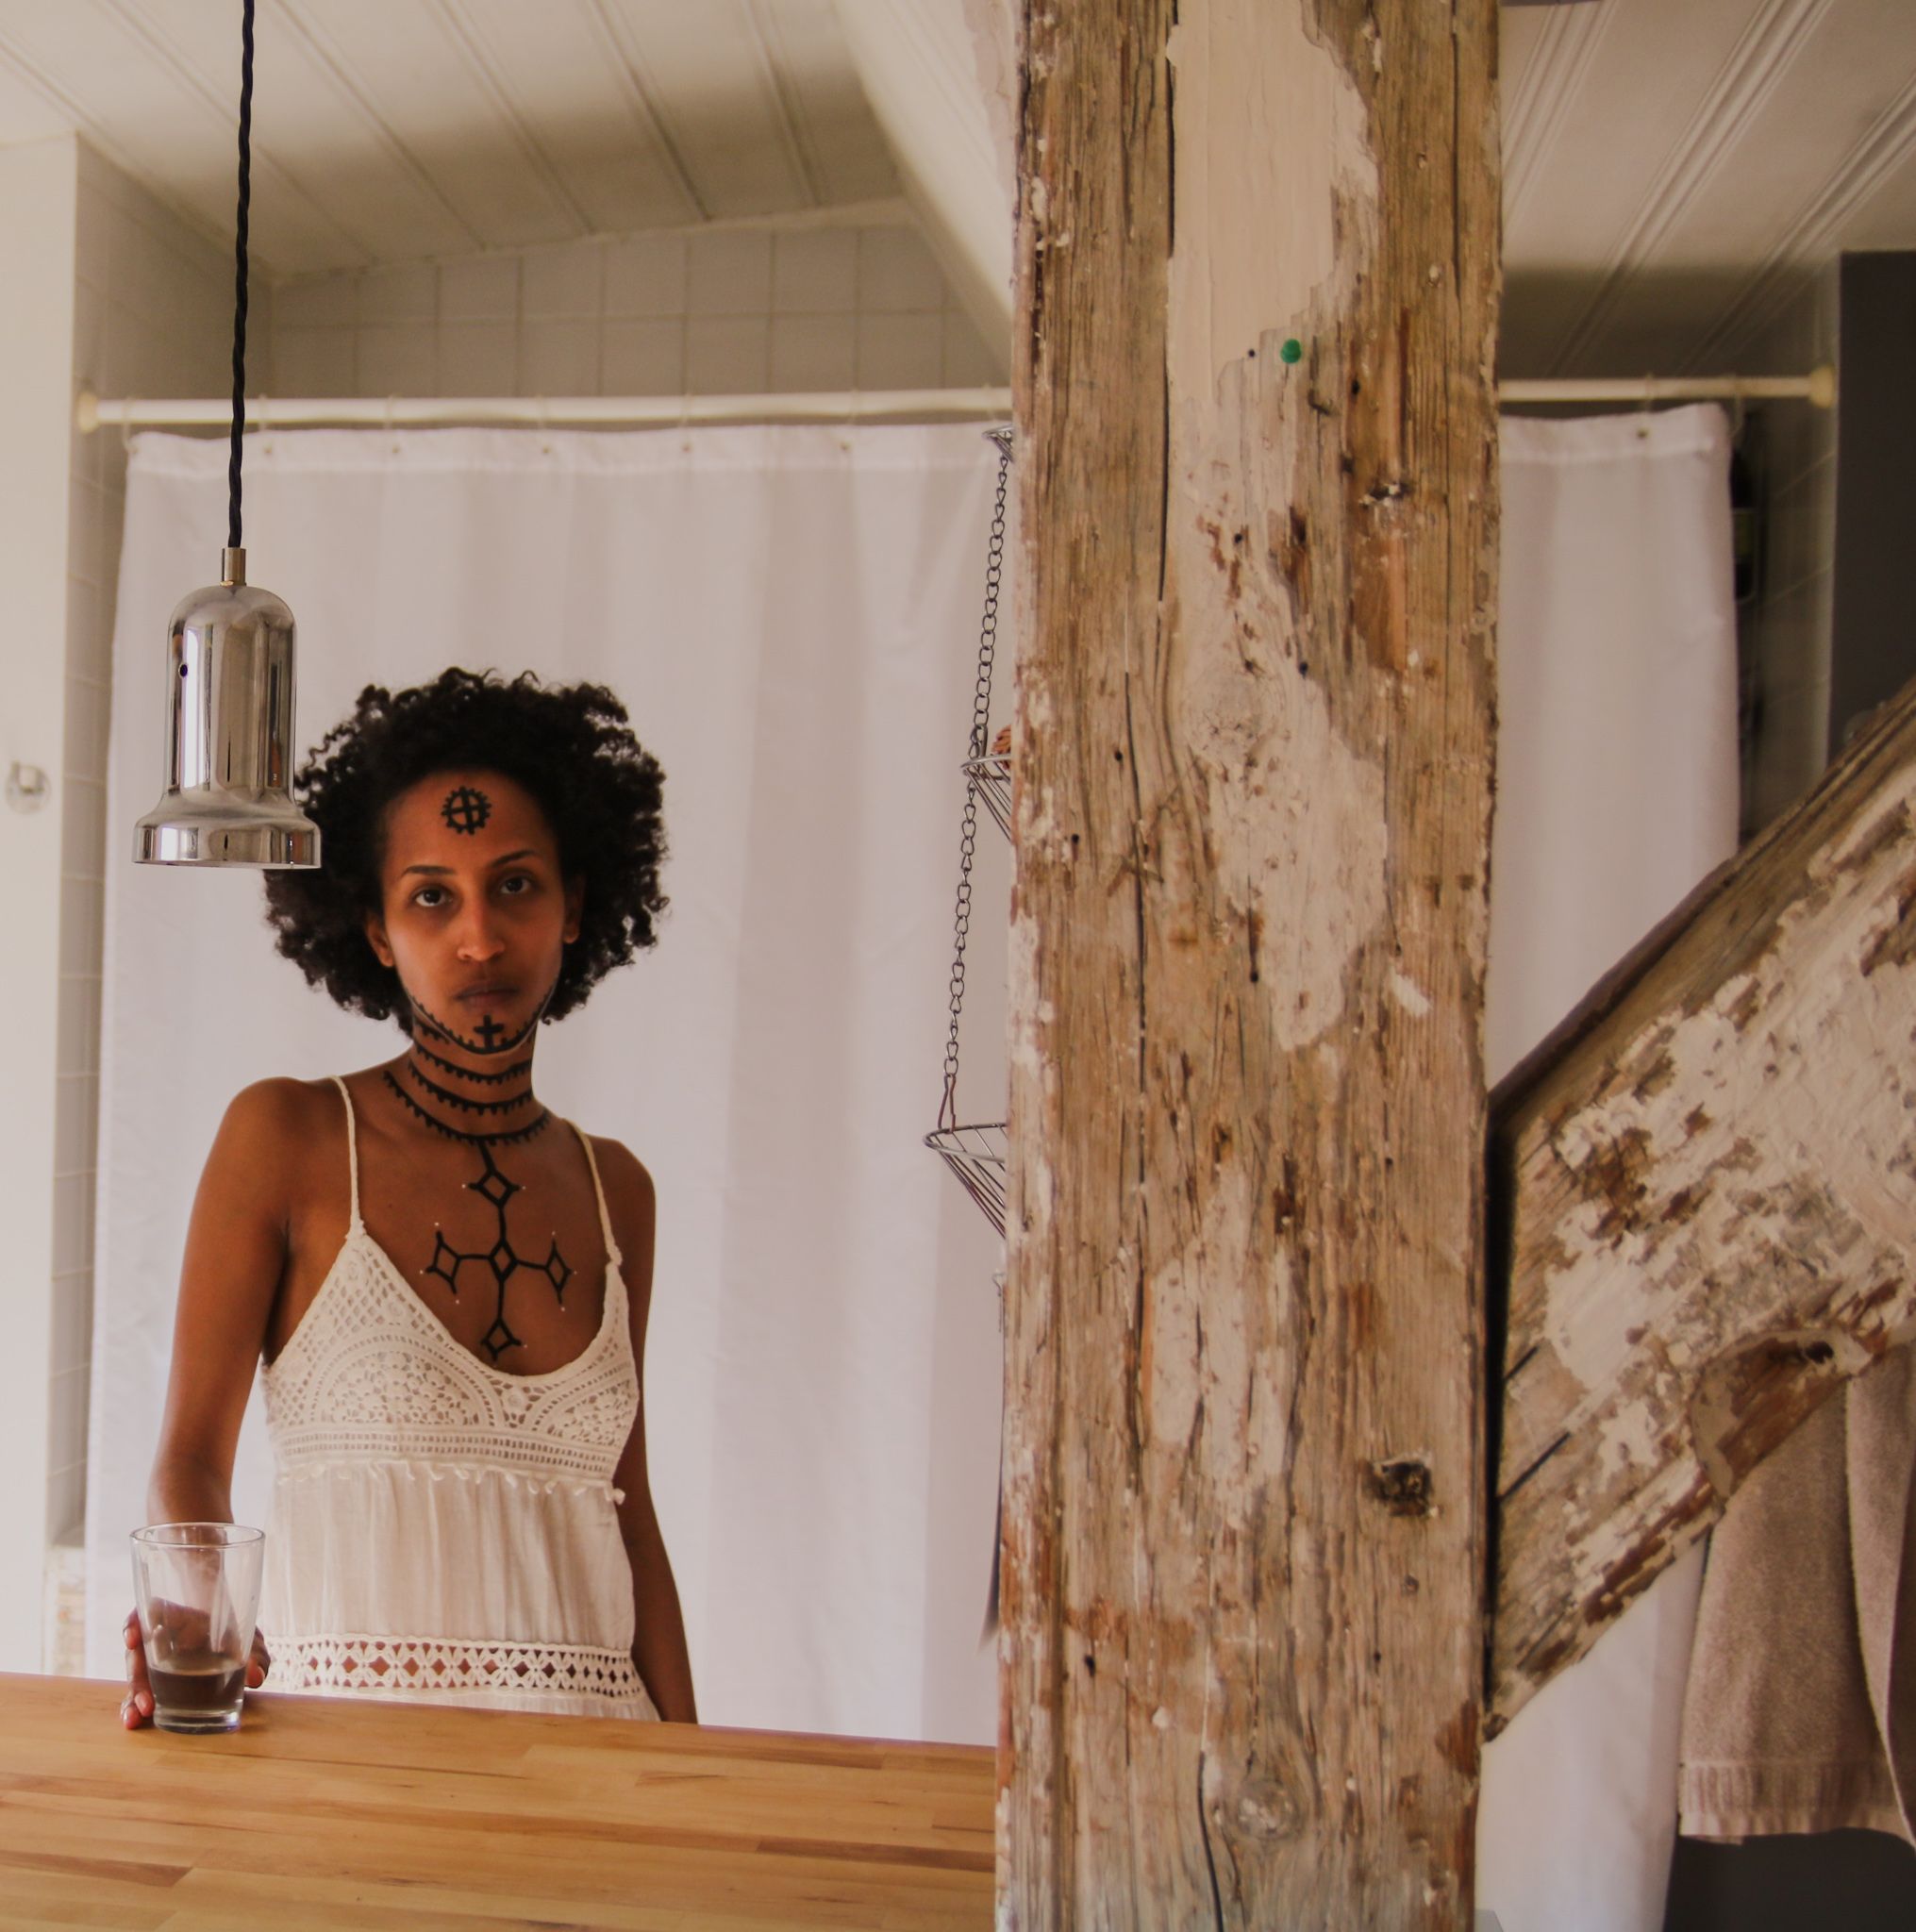 Hinter einem Balken steht eine Frau. Ihr Brustkorb, Hals und Gesicht ist mit äthiopischen Tätowierungen bemalt. Sie hält ein leeres Glas in ihrer rechten Hand, abgestützt auf einer Holzplatte. Sie trägt ein weißes Kleid und blickt direkt in die Kamera.